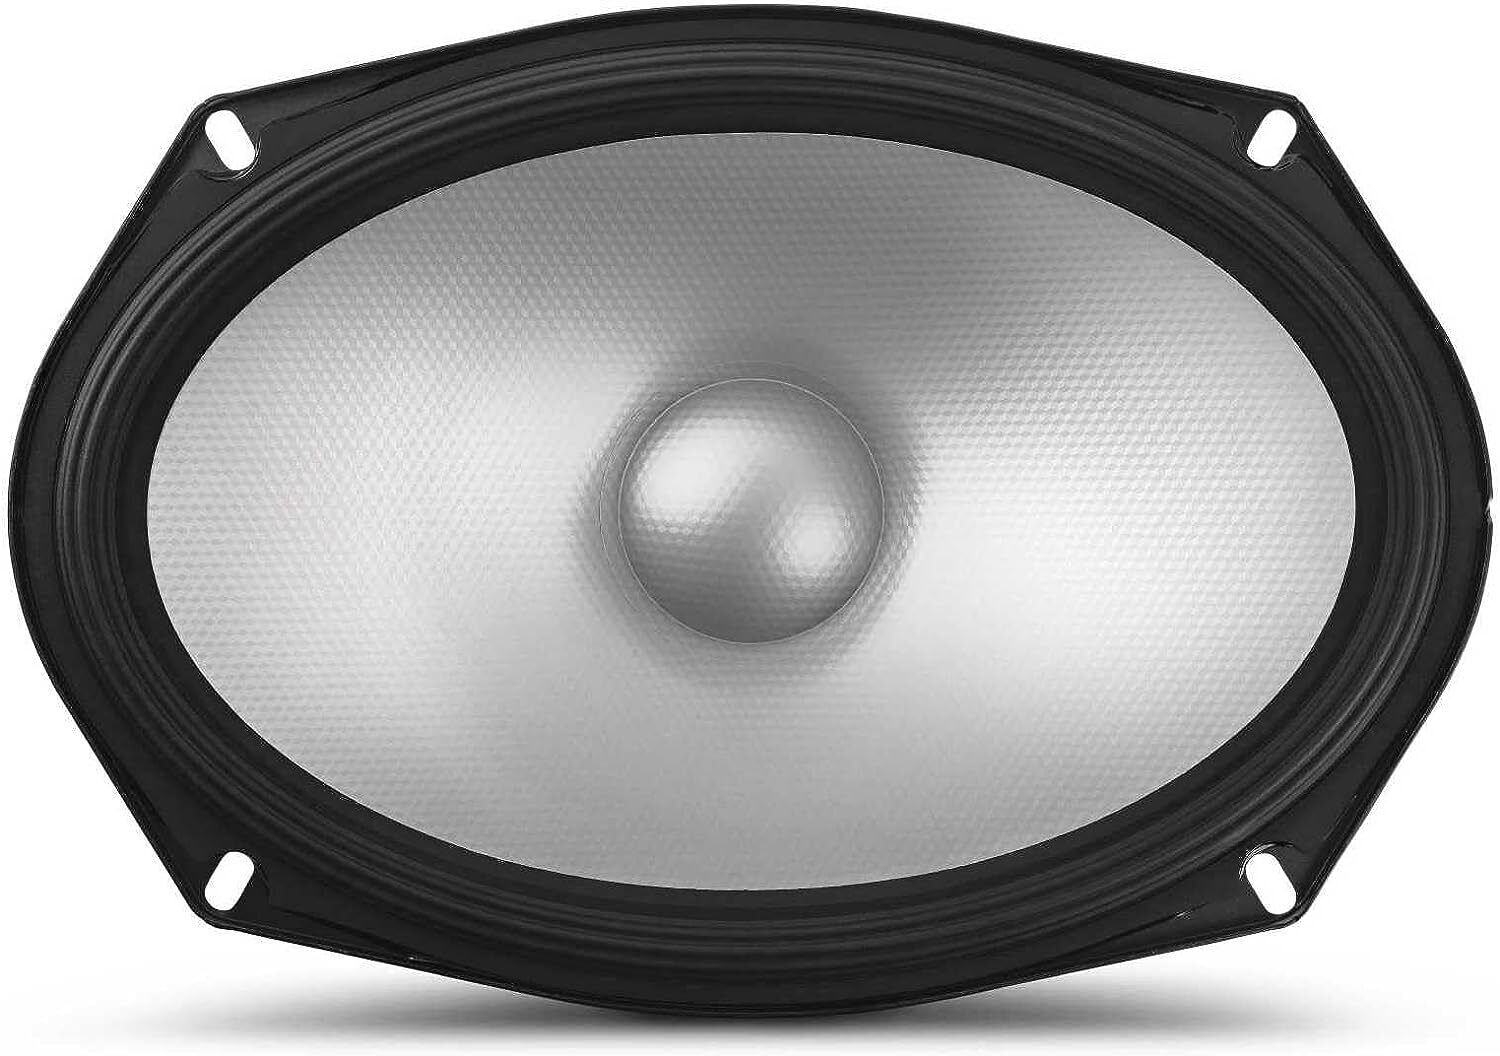 Alpine S Series S2-S69C 6x9" Hi-Res Component Car Audio Speaker System